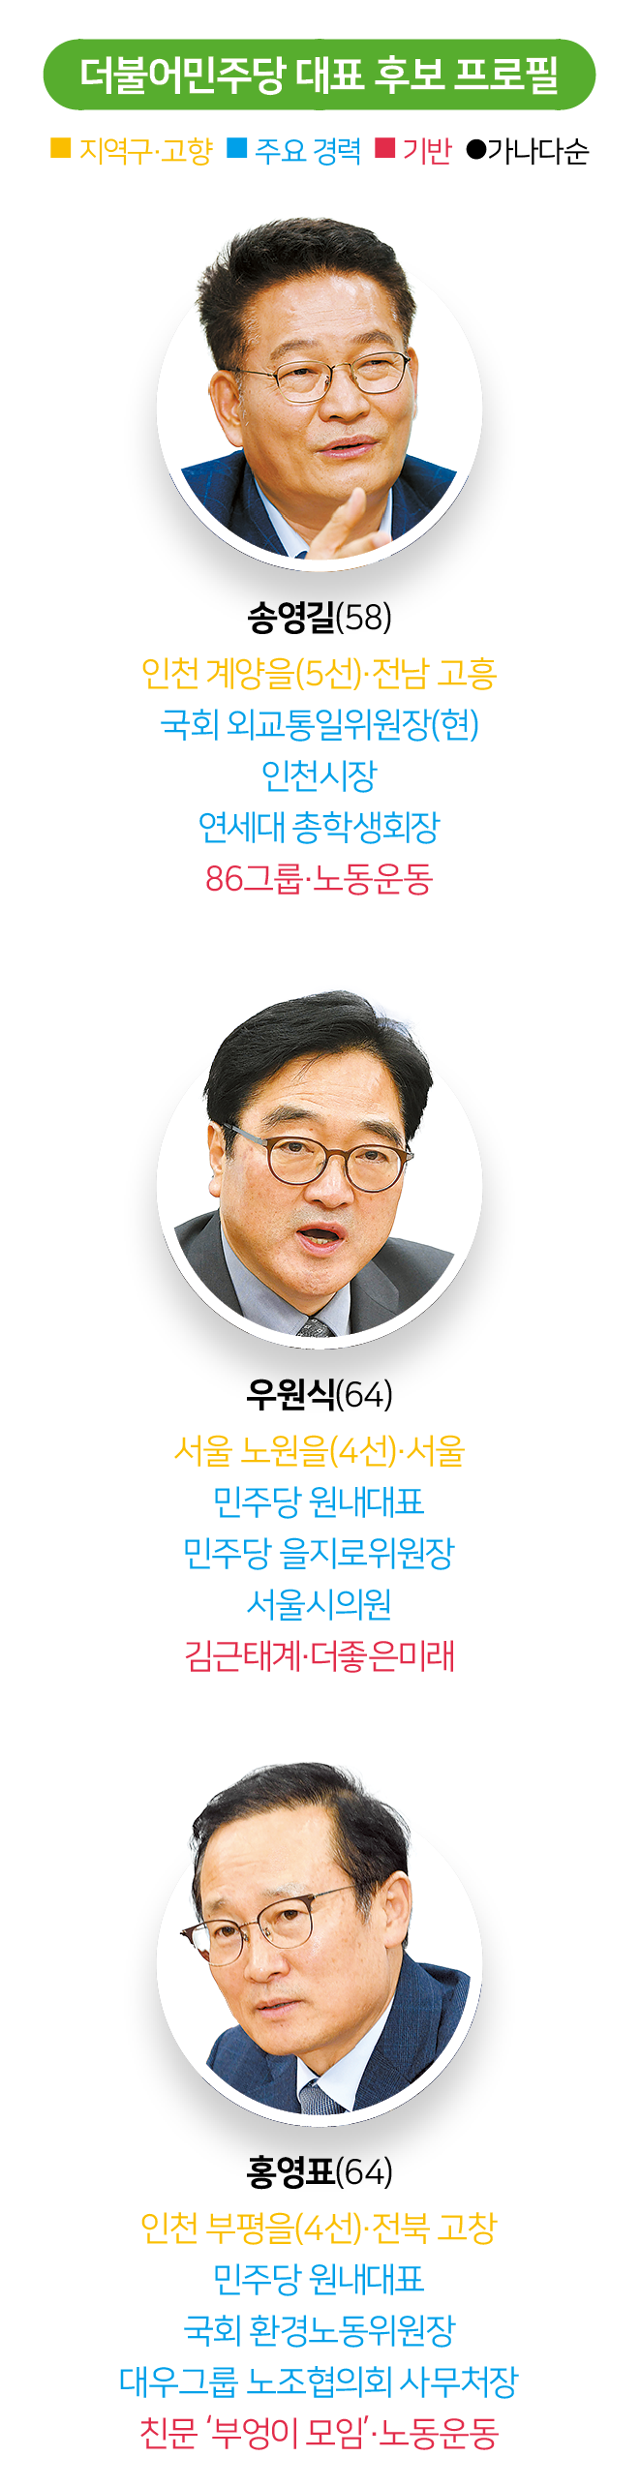 시각물_더불어민주당 대표 후보 프로필